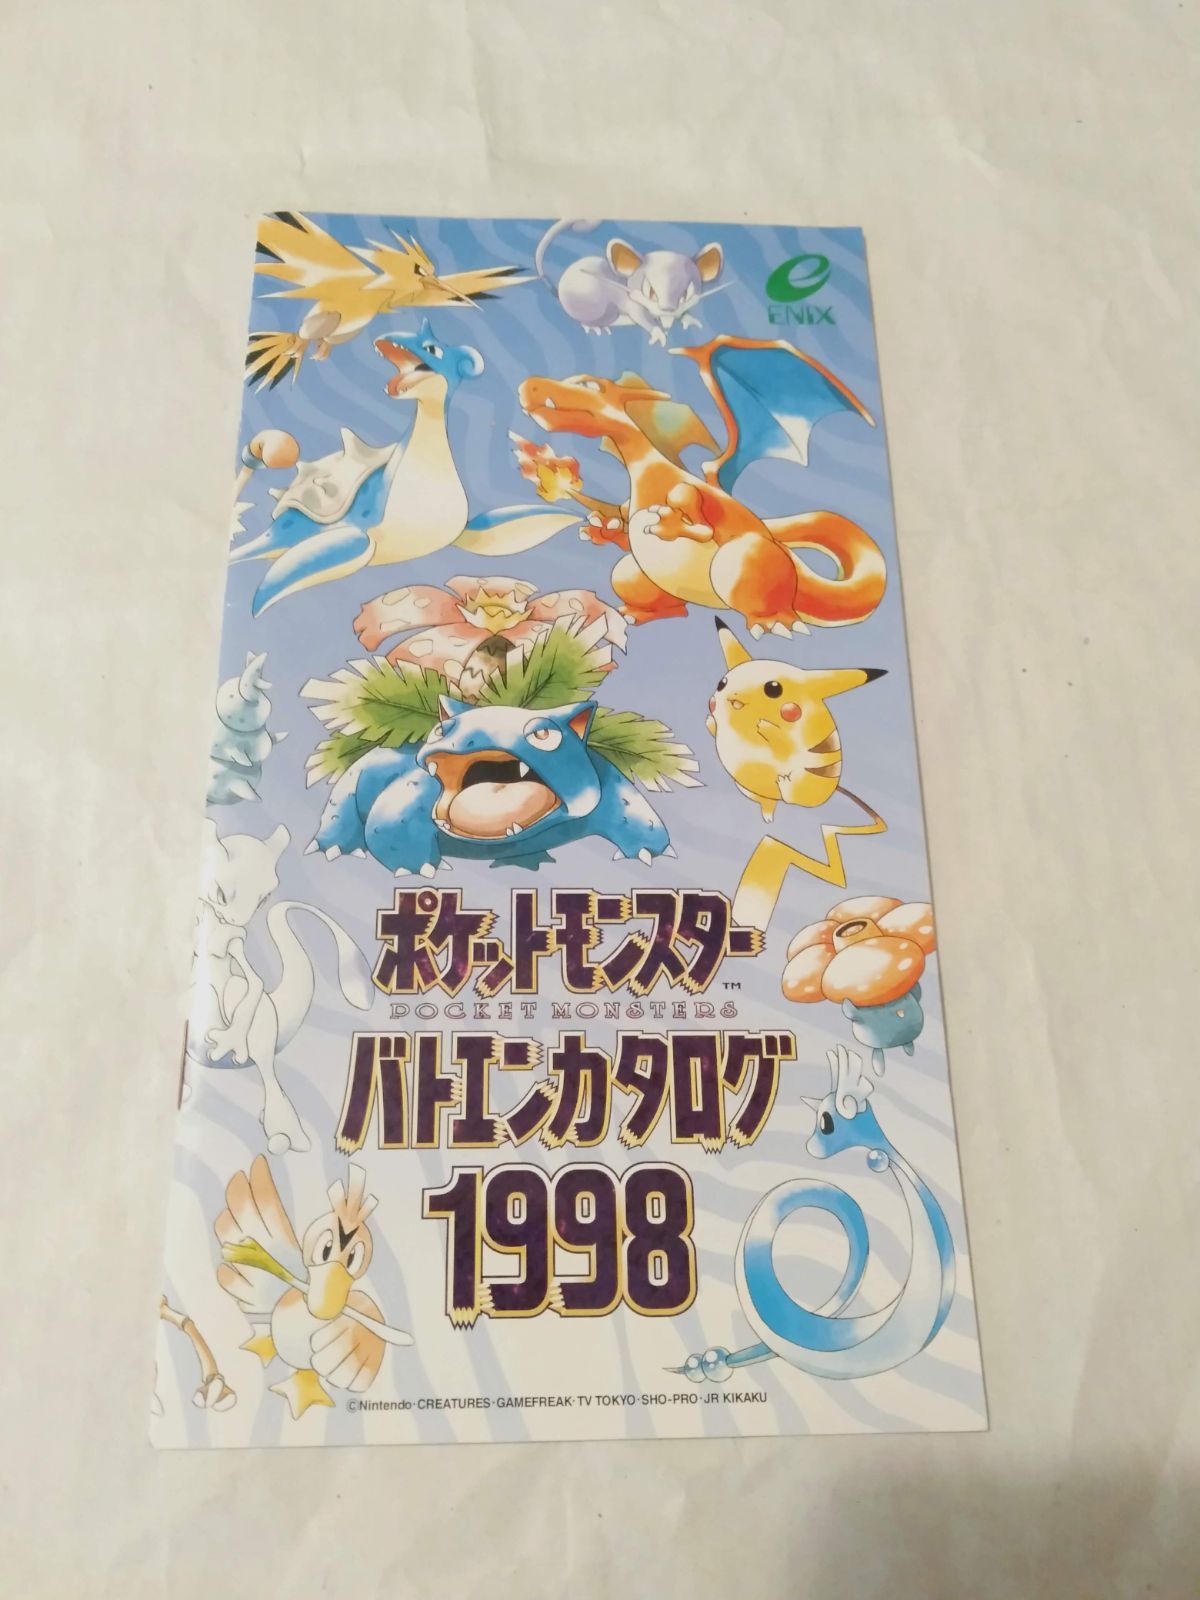 ポケットモンスター バトエンカタログ1998 - コレクション